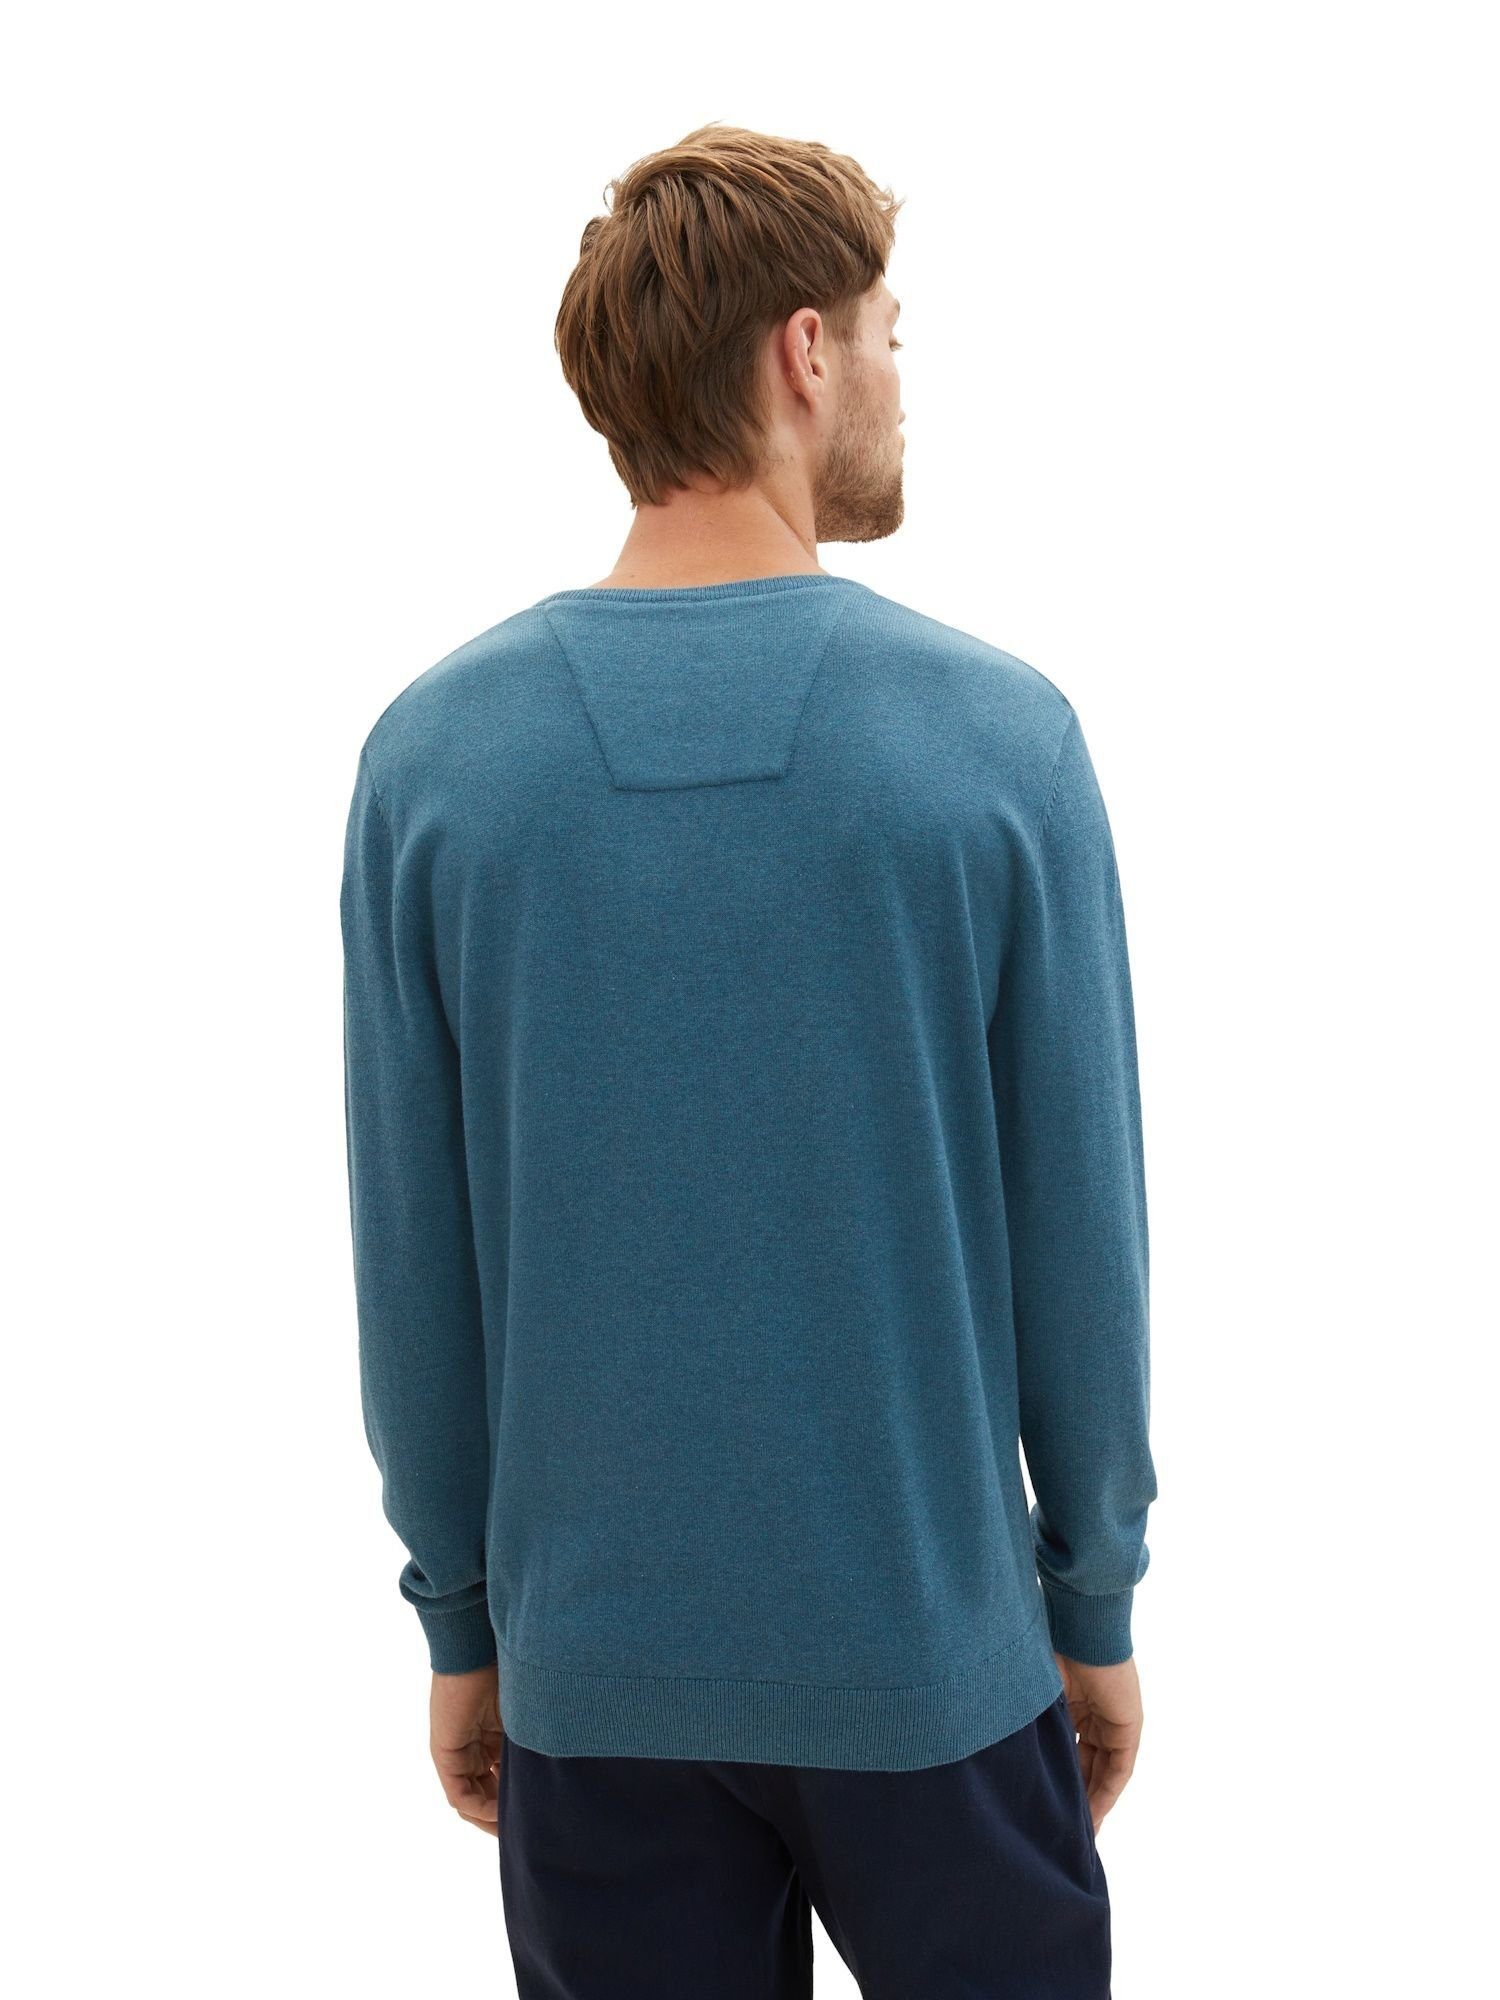 Rippbündchen TAILOR (1-tlg) Sweatshirt Pullover green TOM meliert dark Sweatshirt melange mit